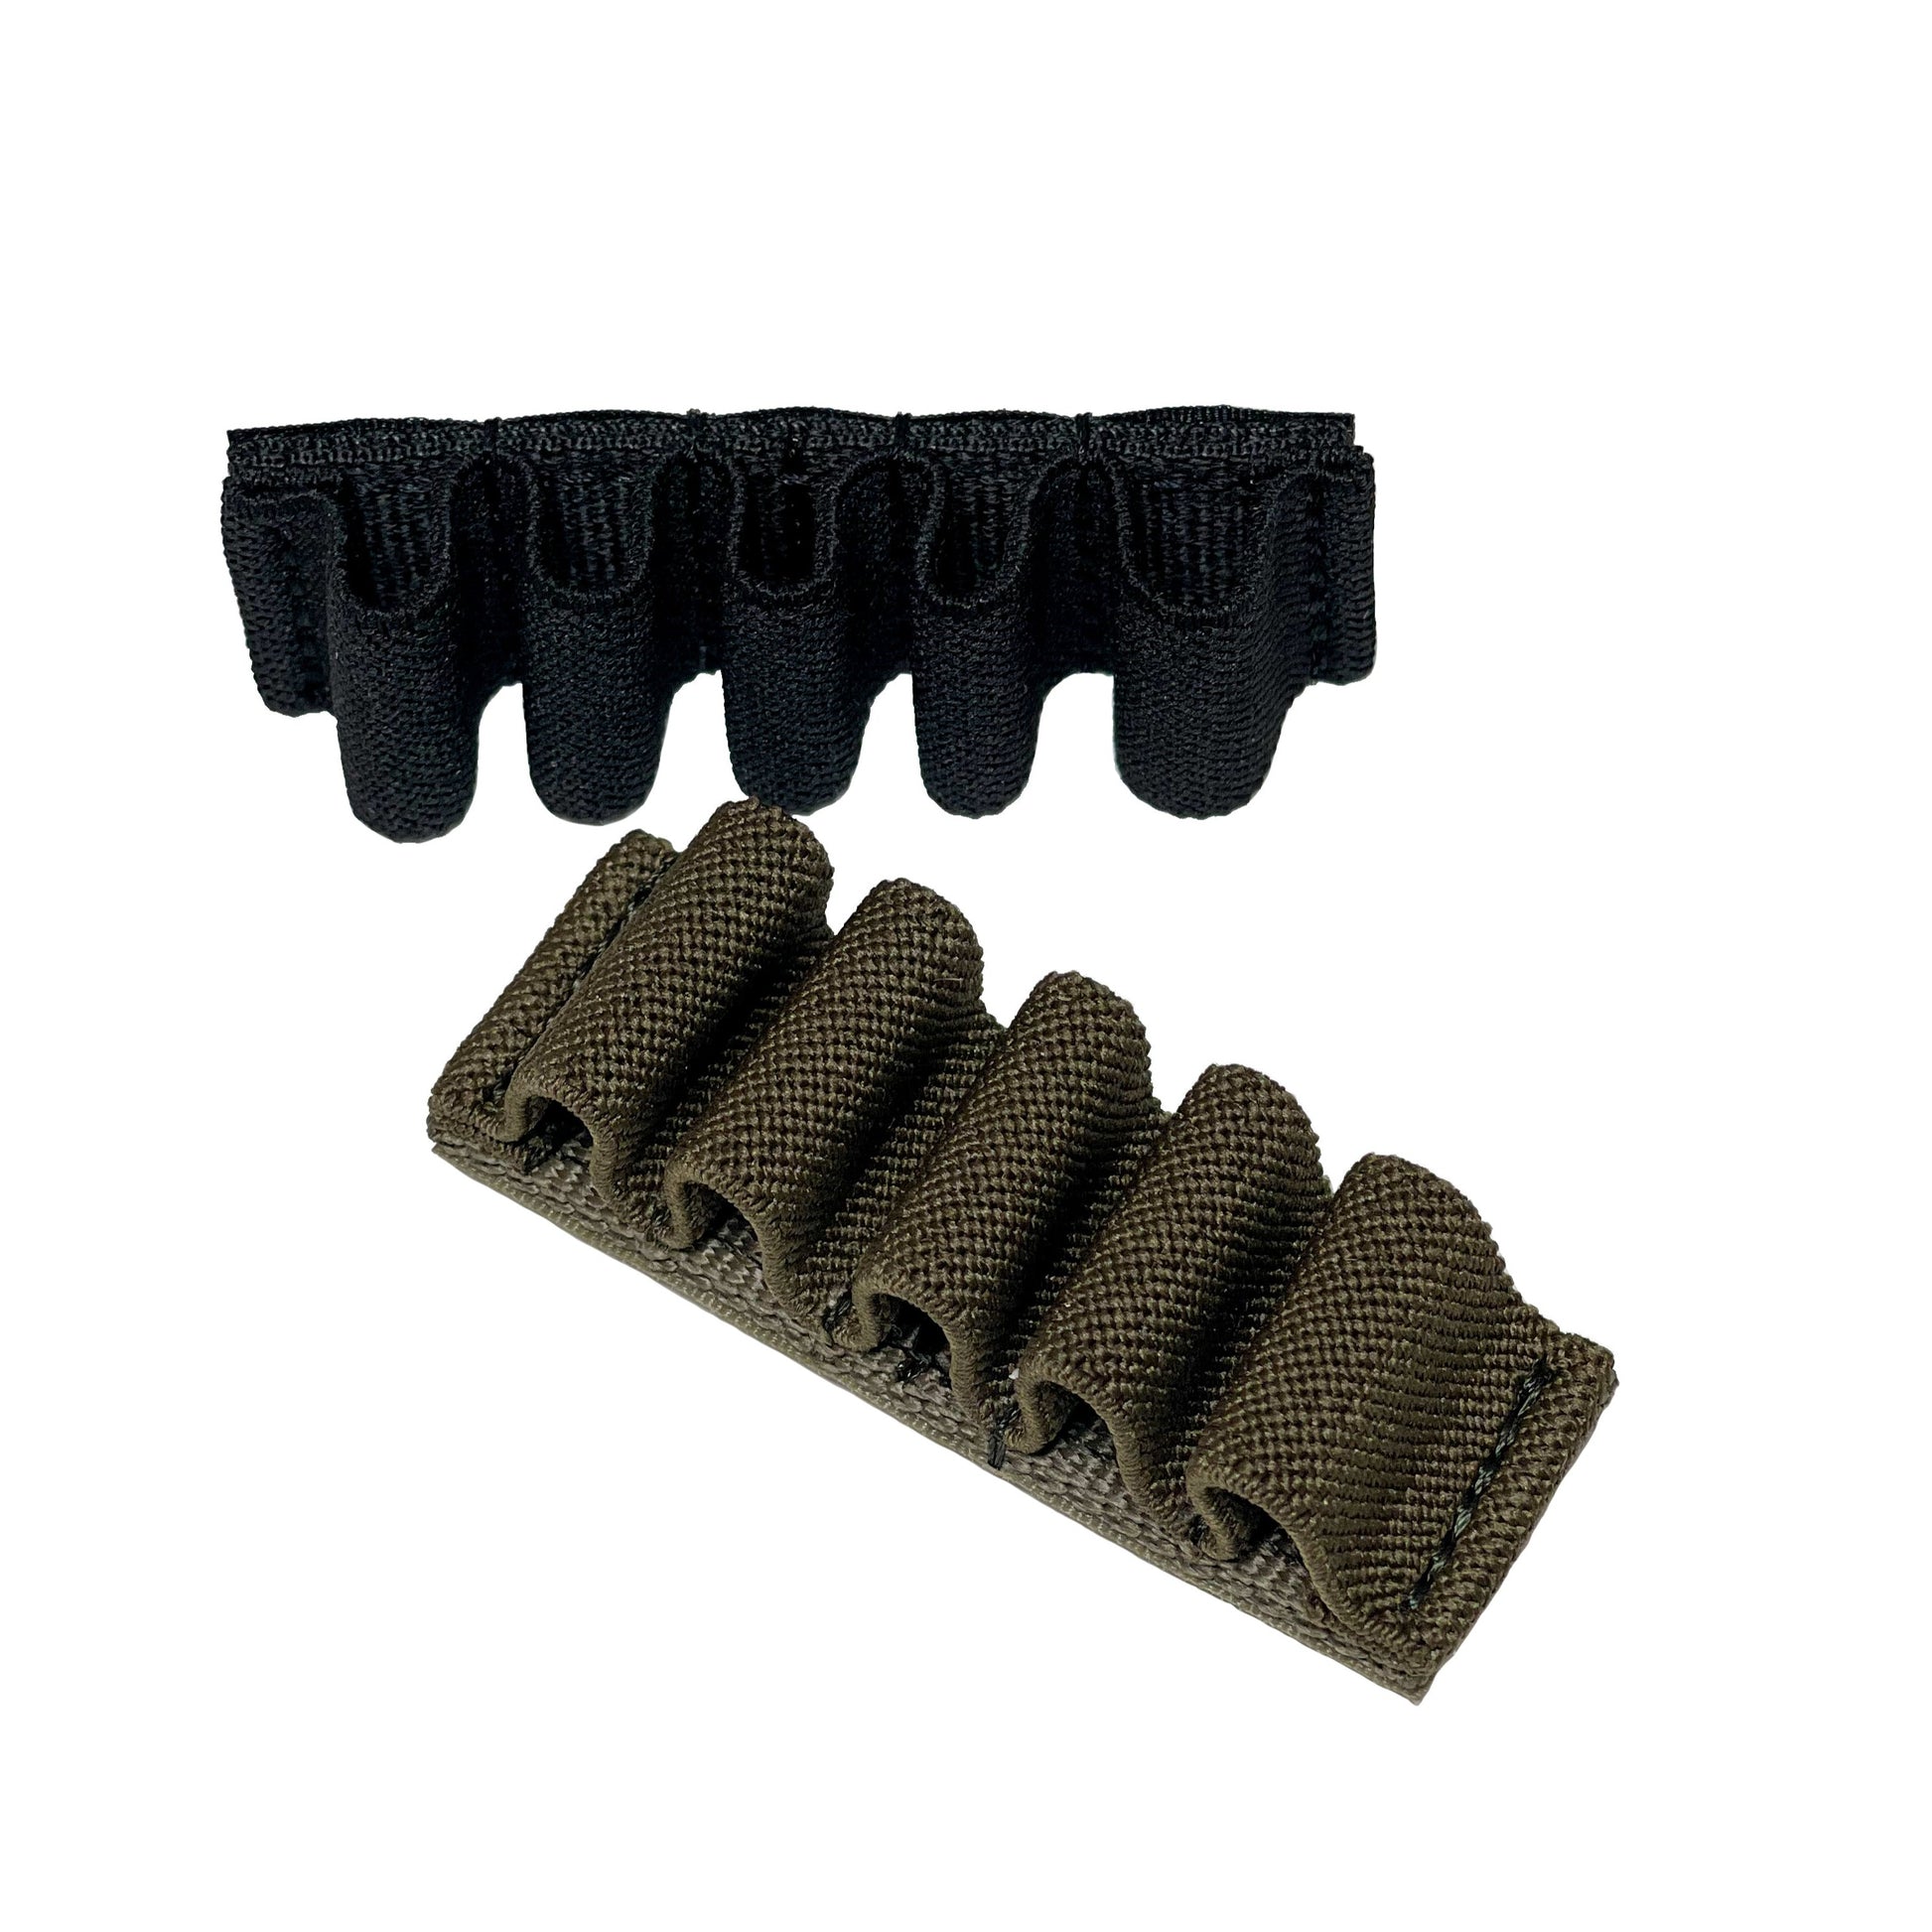 Support Velcro 17,5 x 10,5 cm 101 INC disponible en noir et vert OD